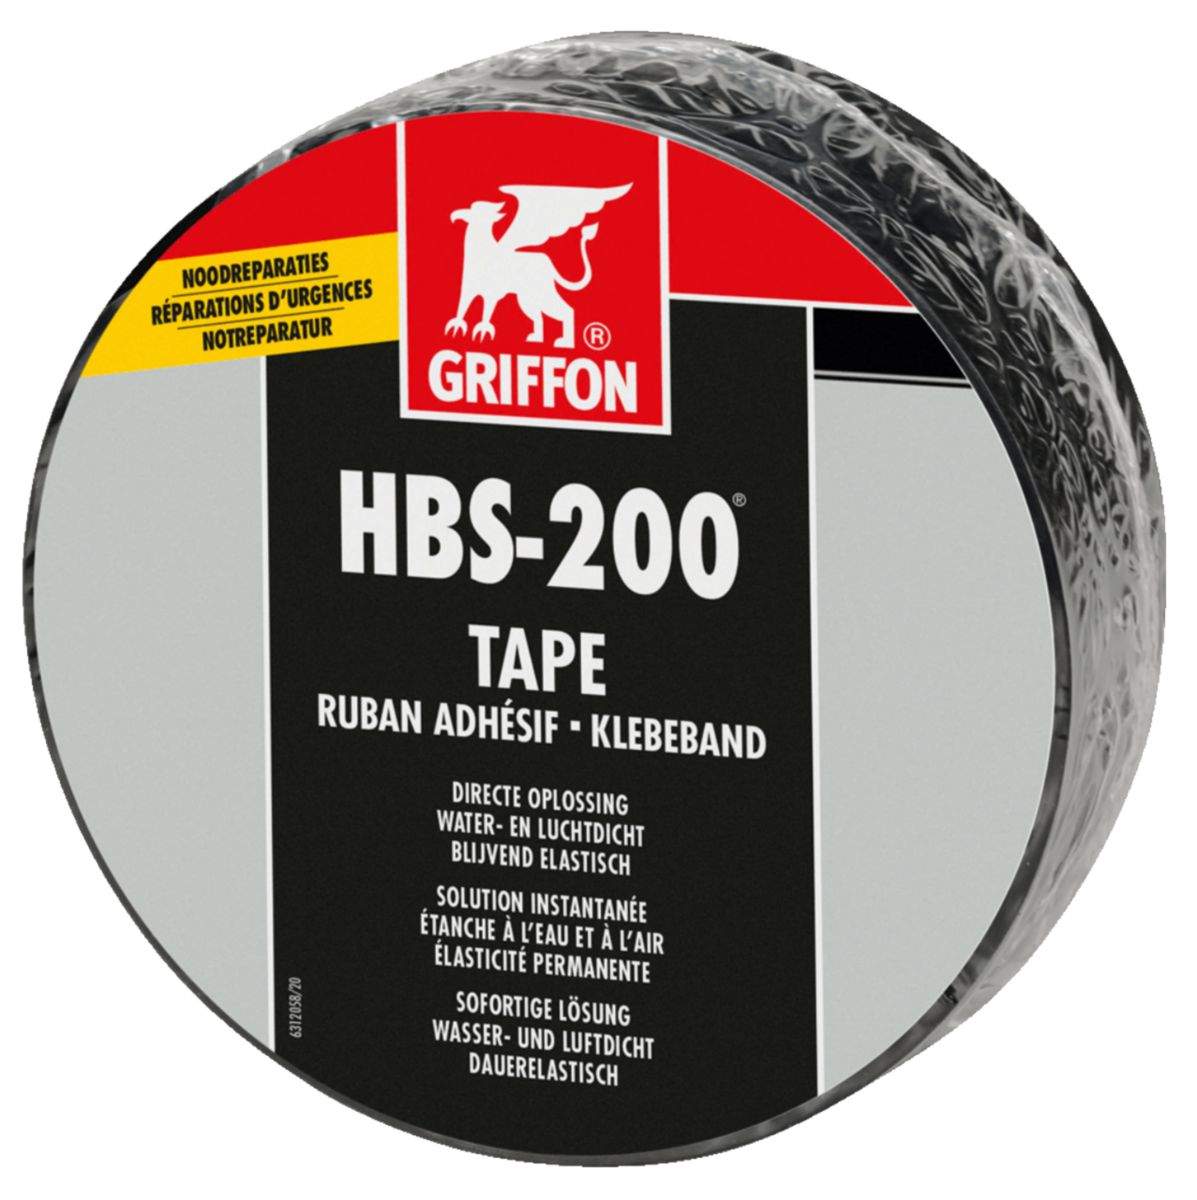 HBS-200 TAPE instant waterproof tape, 5m x 7.5cm